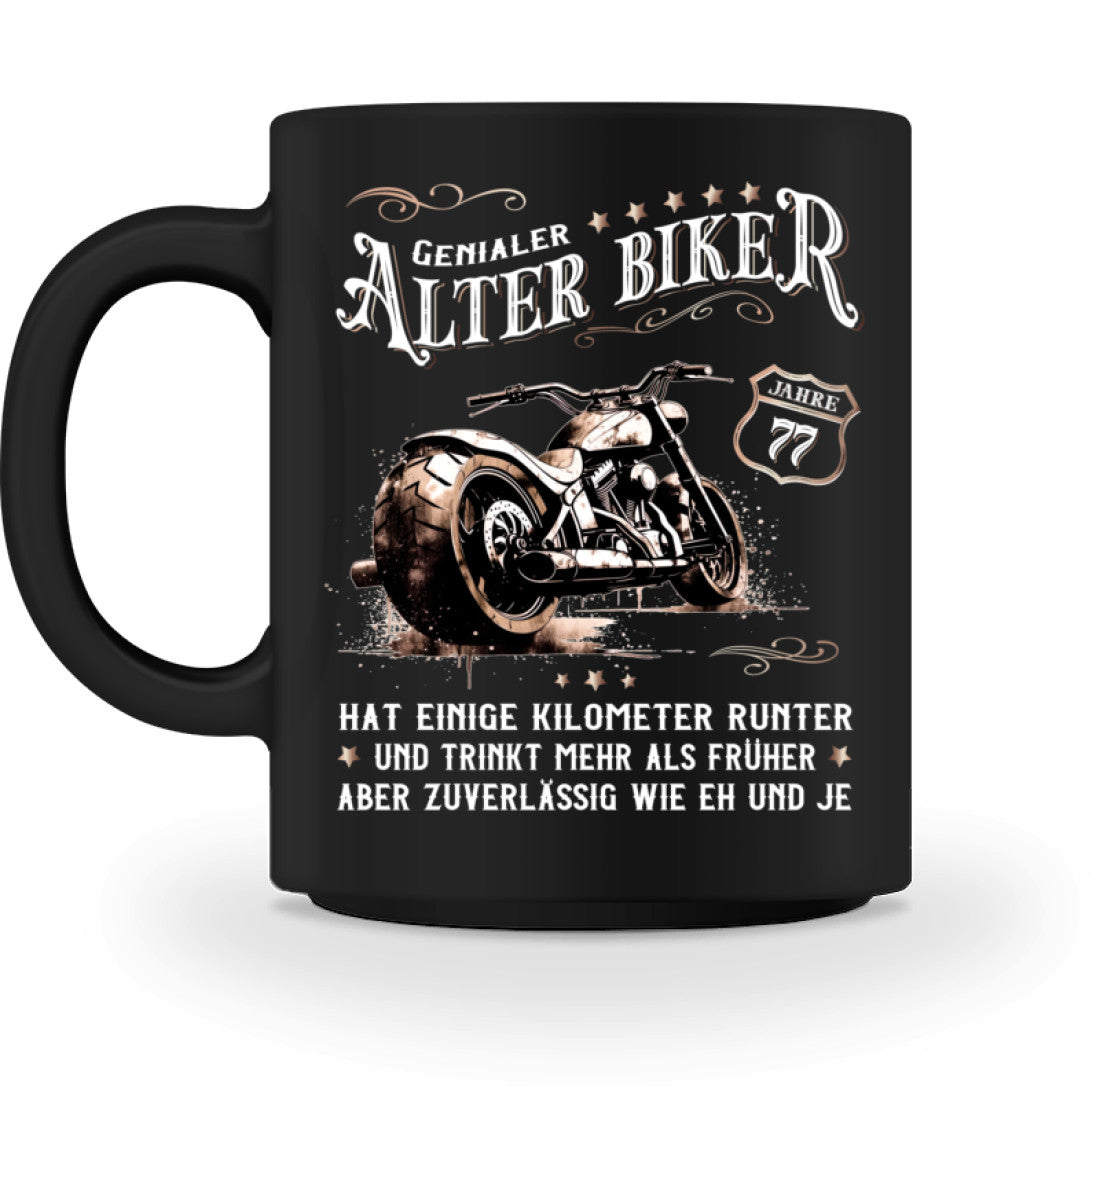 Eine Biker Geburtstags-Tasse für Motorradfahrer, von Wingbikers, mit dem beidseitigen Aufdruck, Alter Biker - 77 Jahre - Einige Kilometer runter, trinkt mehr - aber zuverlässig wie eh und je, in schwarz.